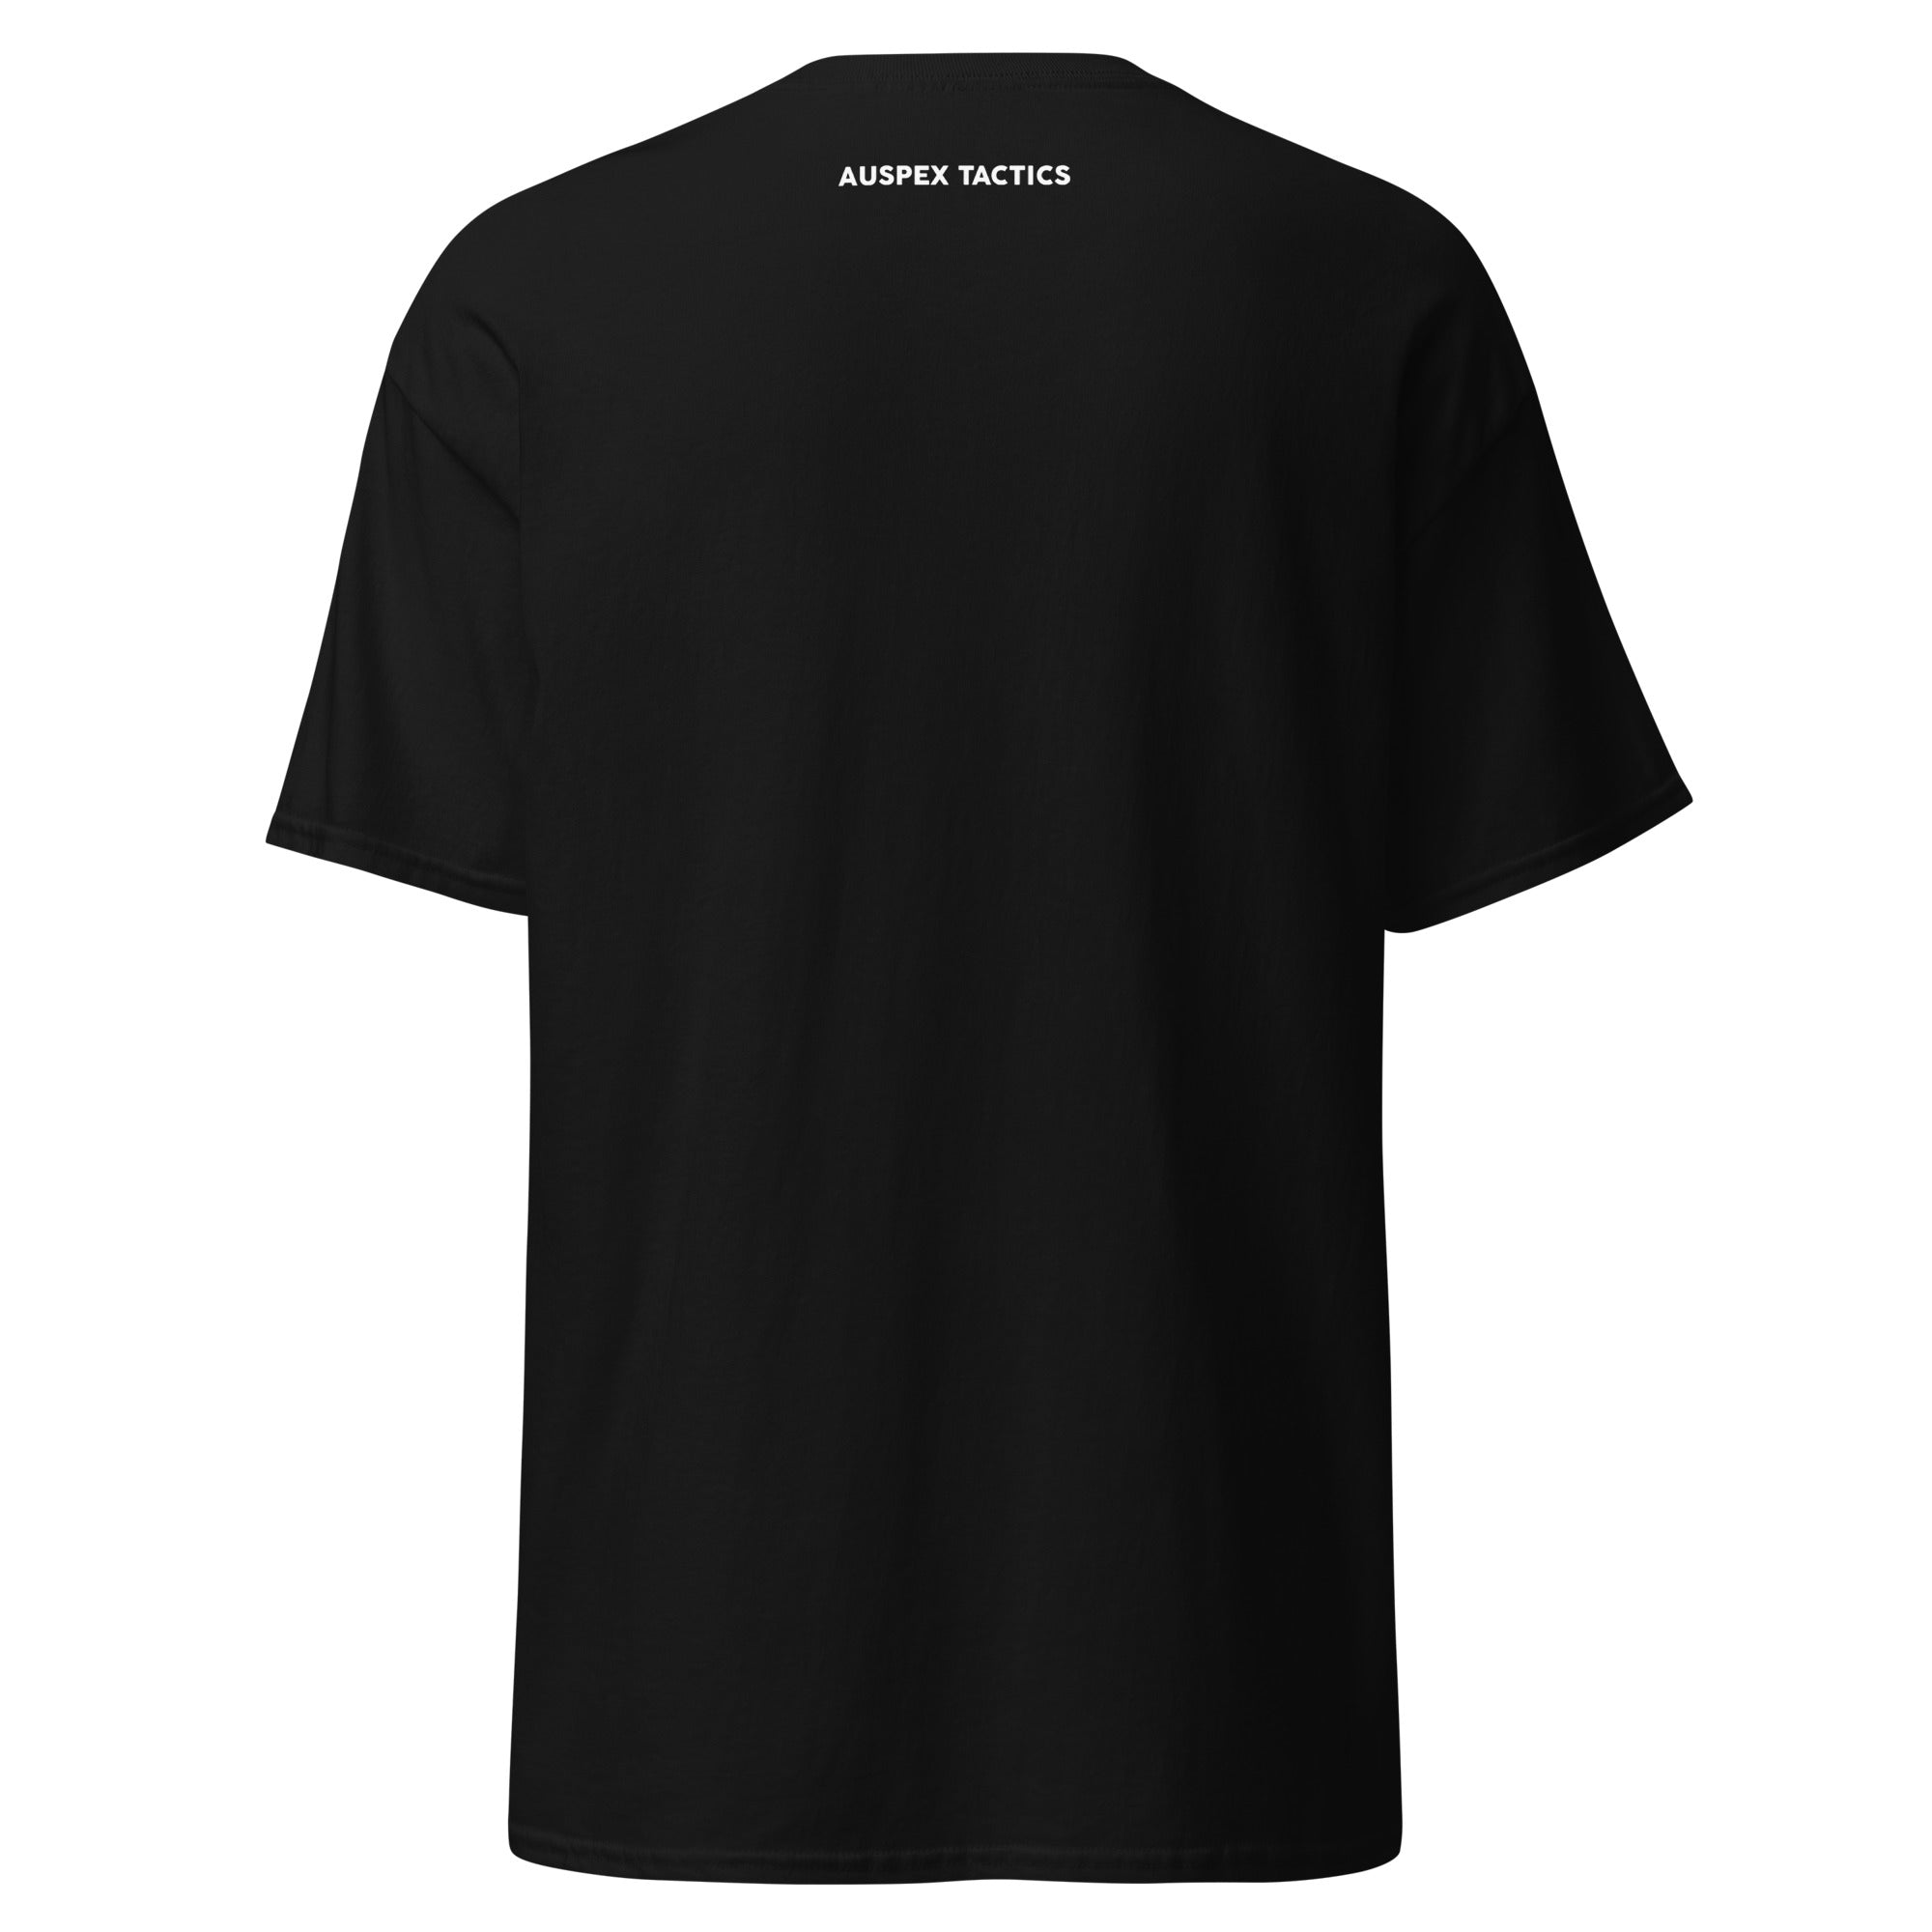 The Auspex Tactics T-Shirt (No YT Logo)